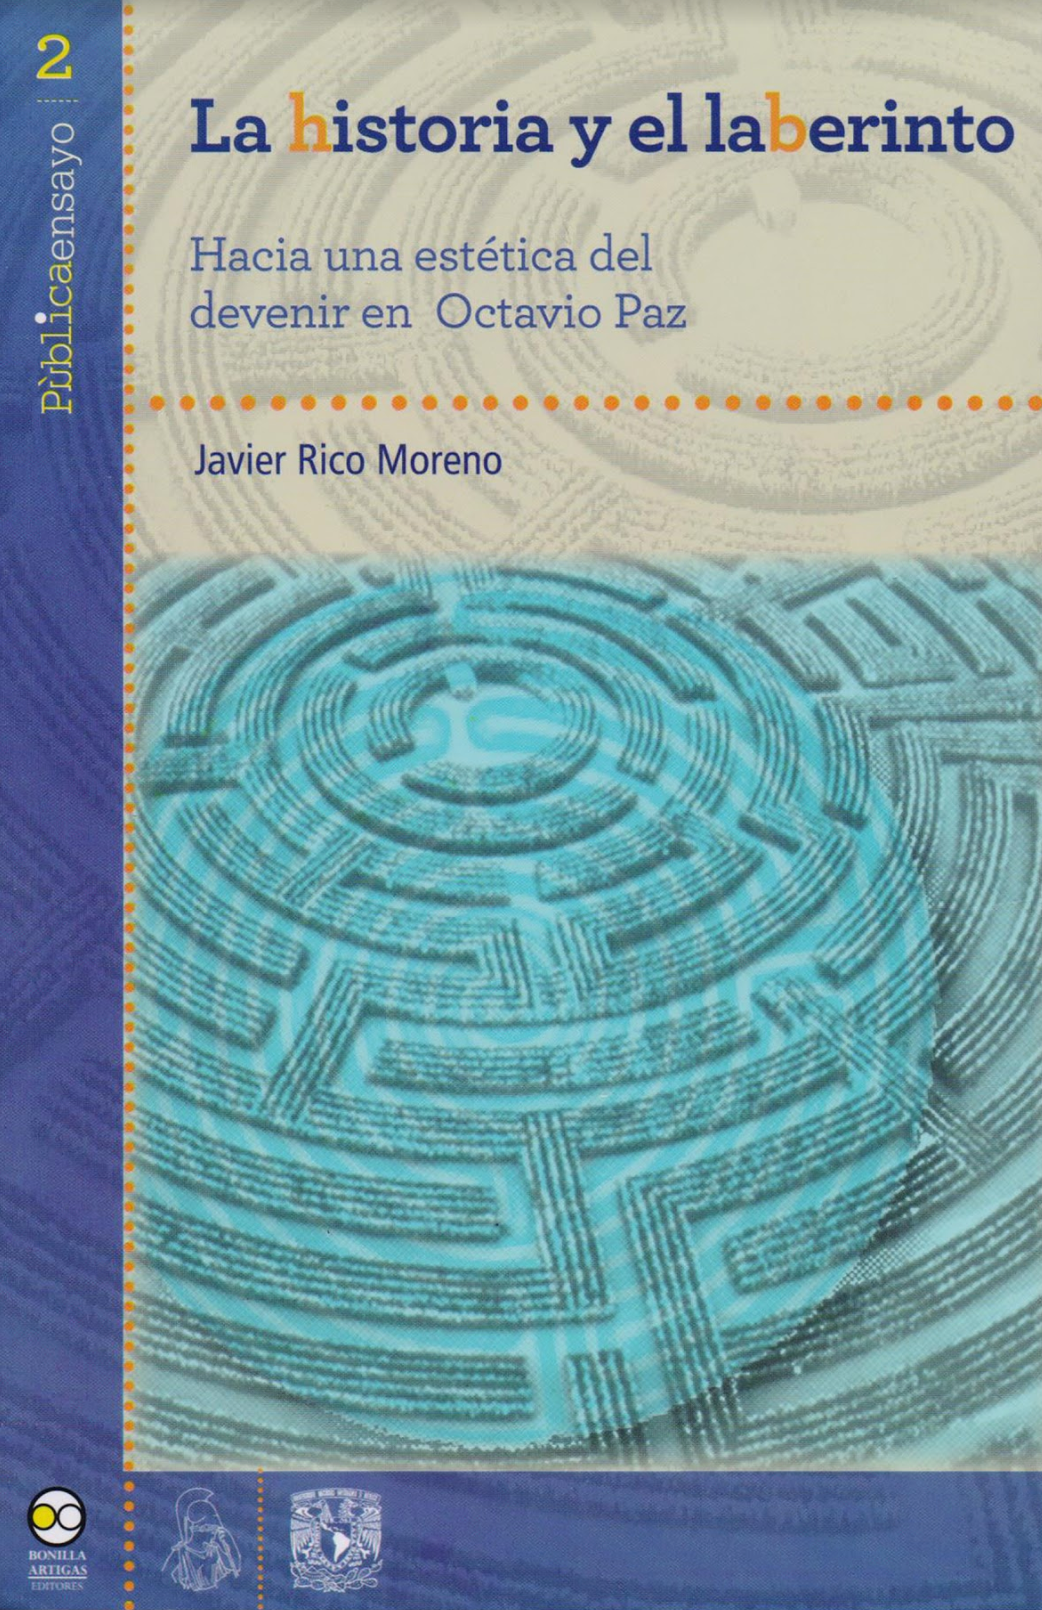 La historia y el laberinto. Hacia una estética del devenir en Octavio Paz - Javier Rico Moreno